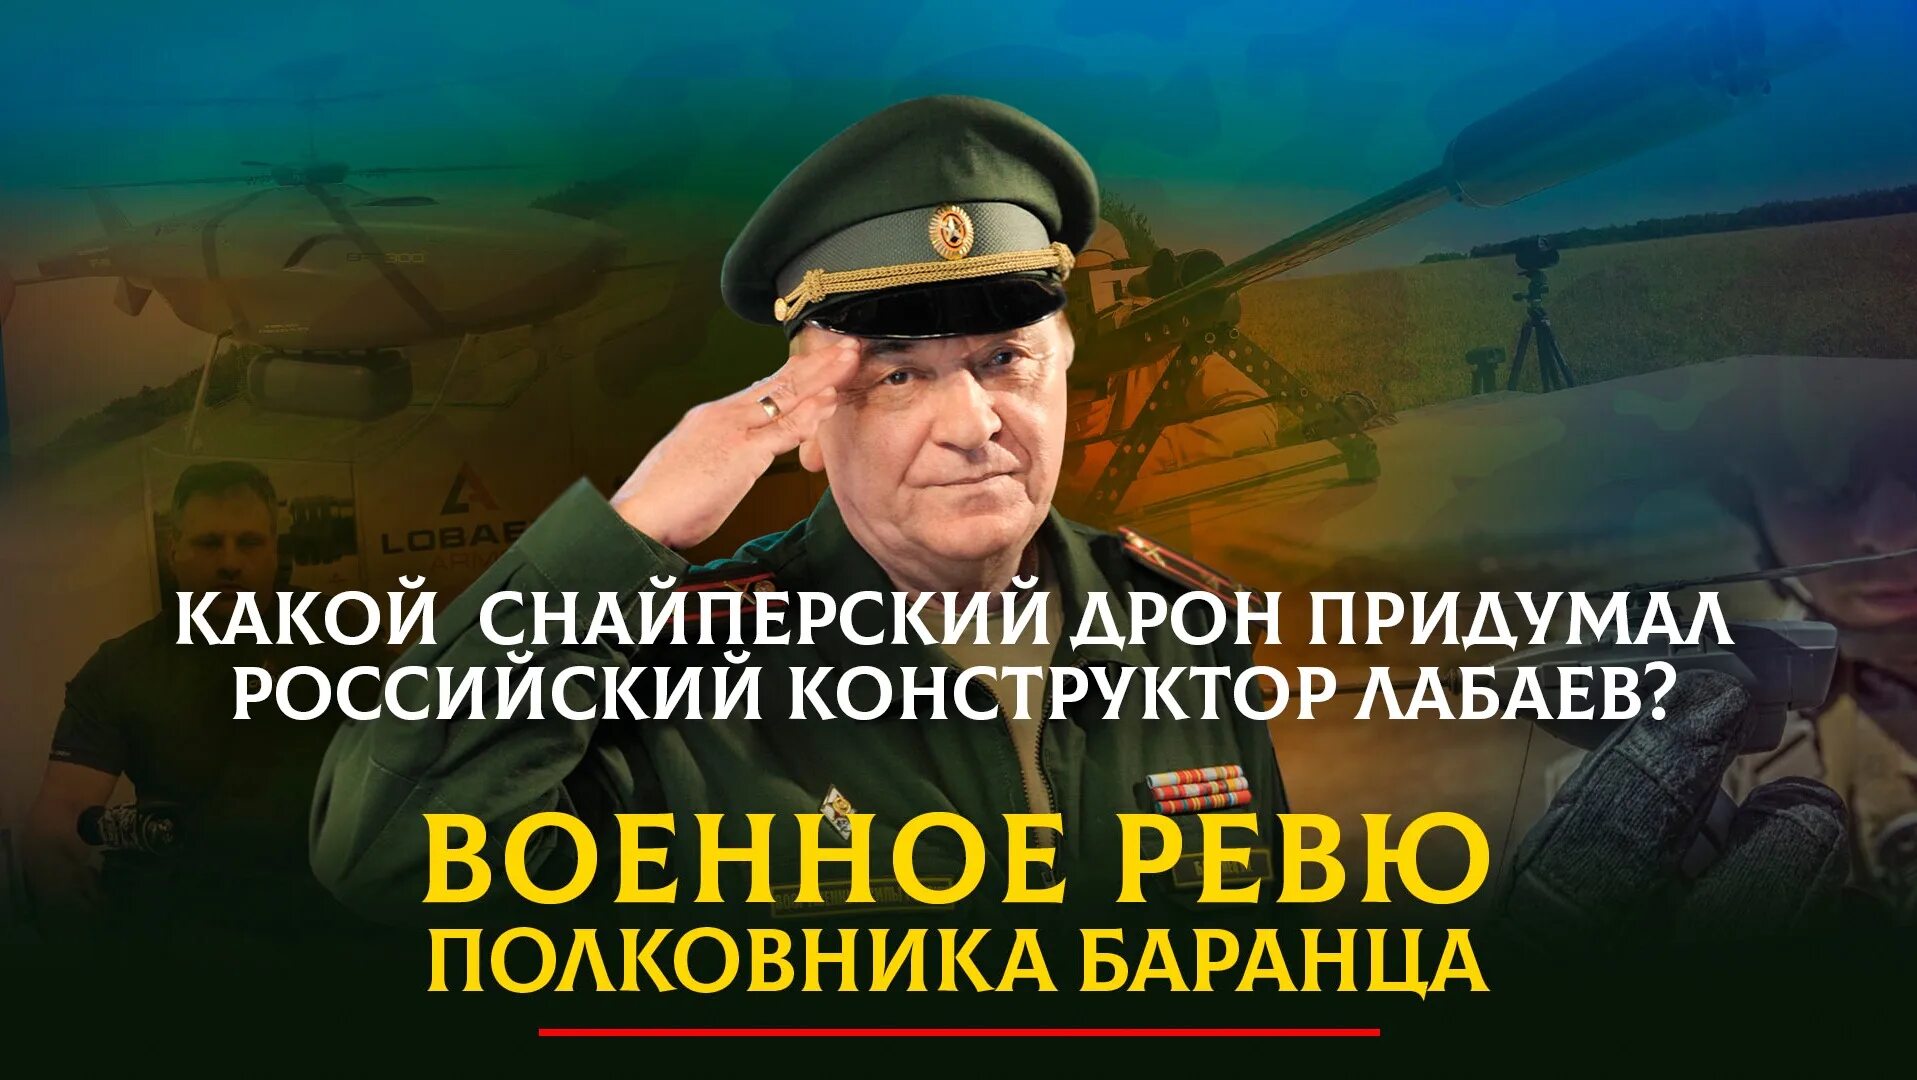 Полковник Баранец и Тимошенко. Военное ревю полковника Михаила Тимошенко Баранца.